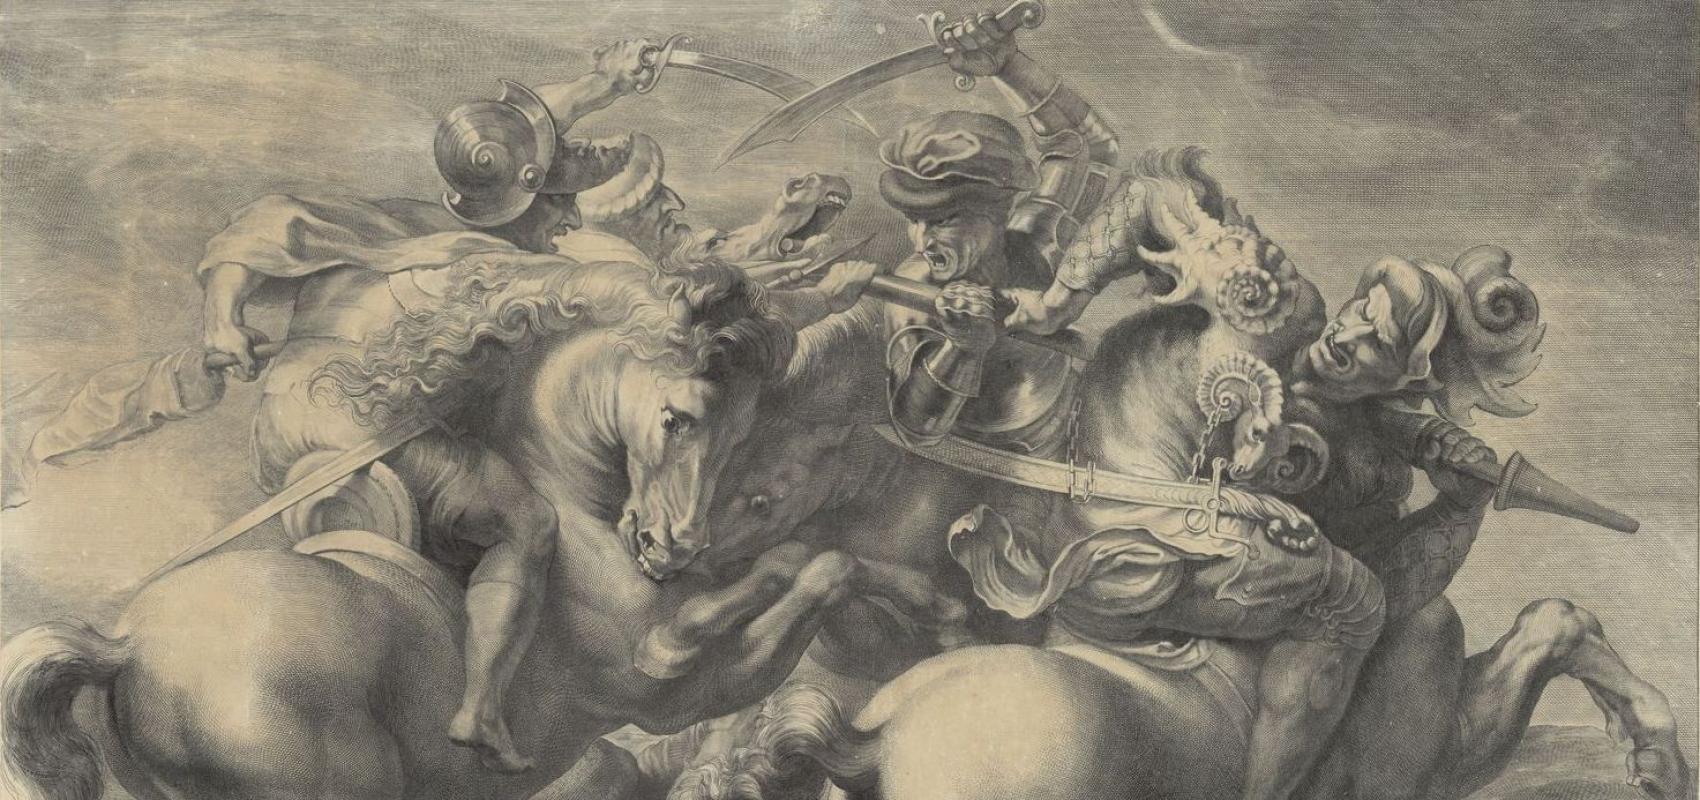 Gérard Edelinck d’après Pierre-Paul Rubens, "La Lutte pour l’étendard", détail - vers 1660 - BnF, dép. Estampes et photographie